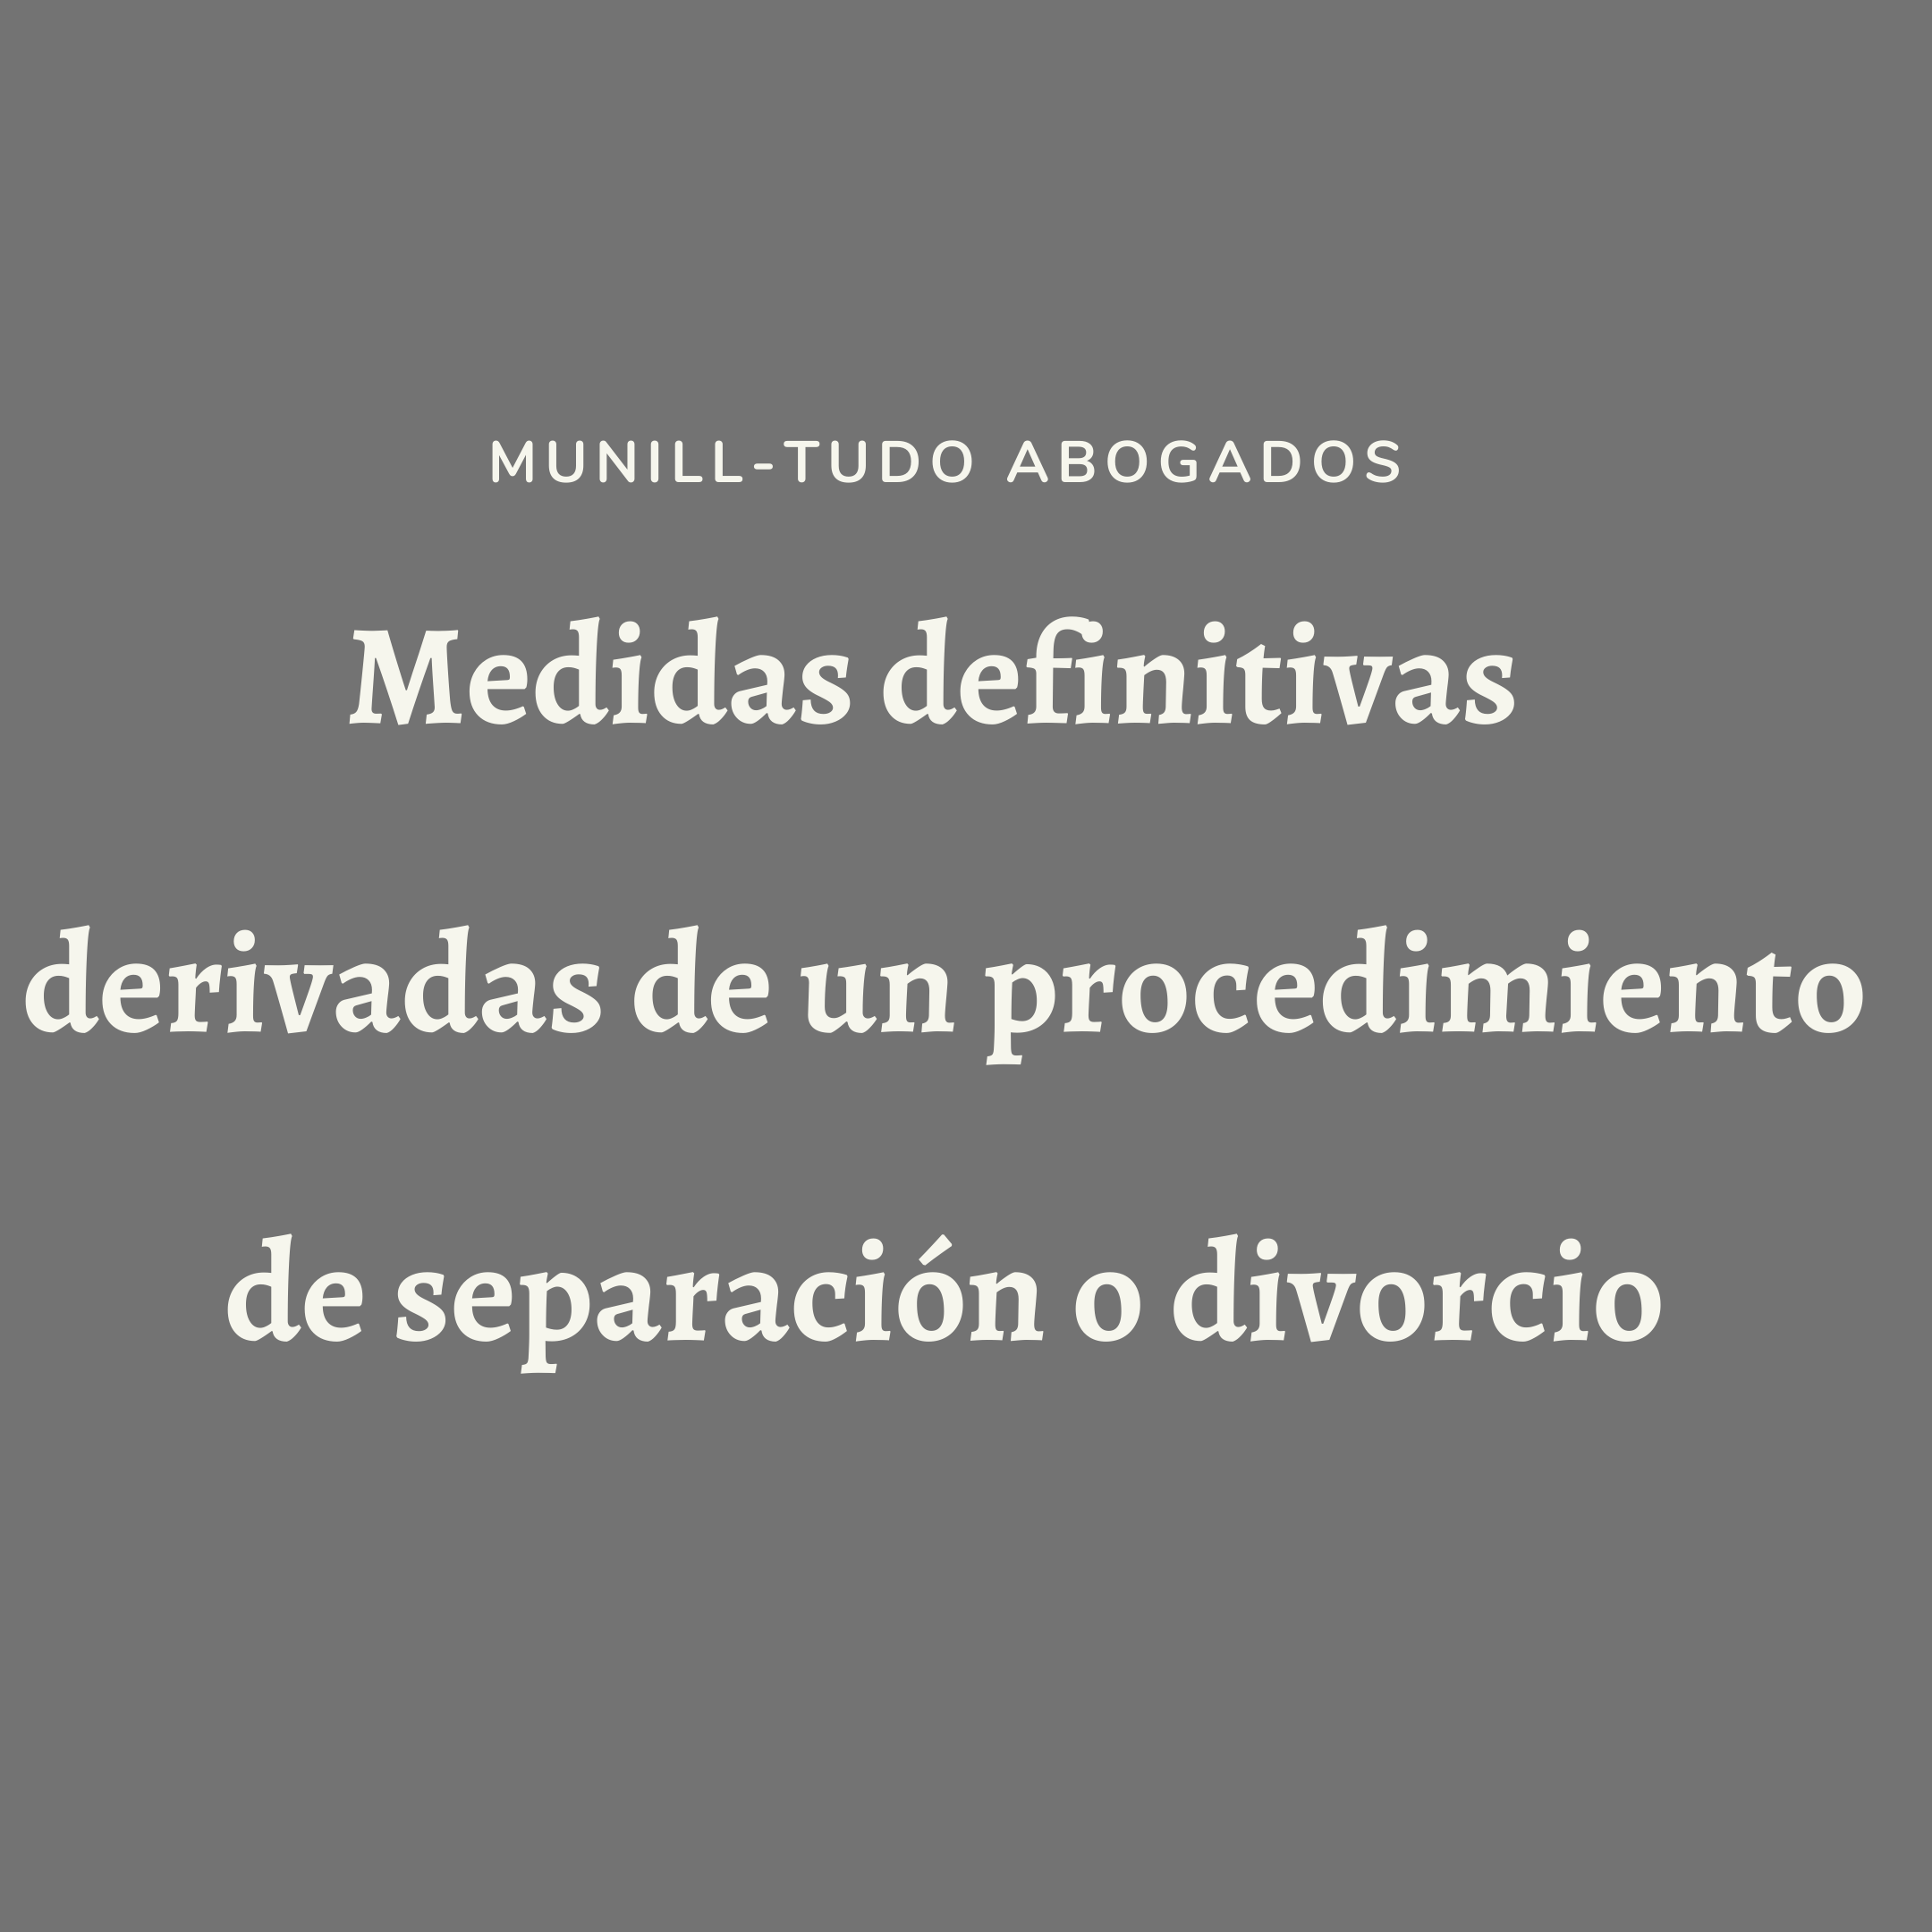 Medidas definitivas derivadas de un procedimiento de separación o divorcio